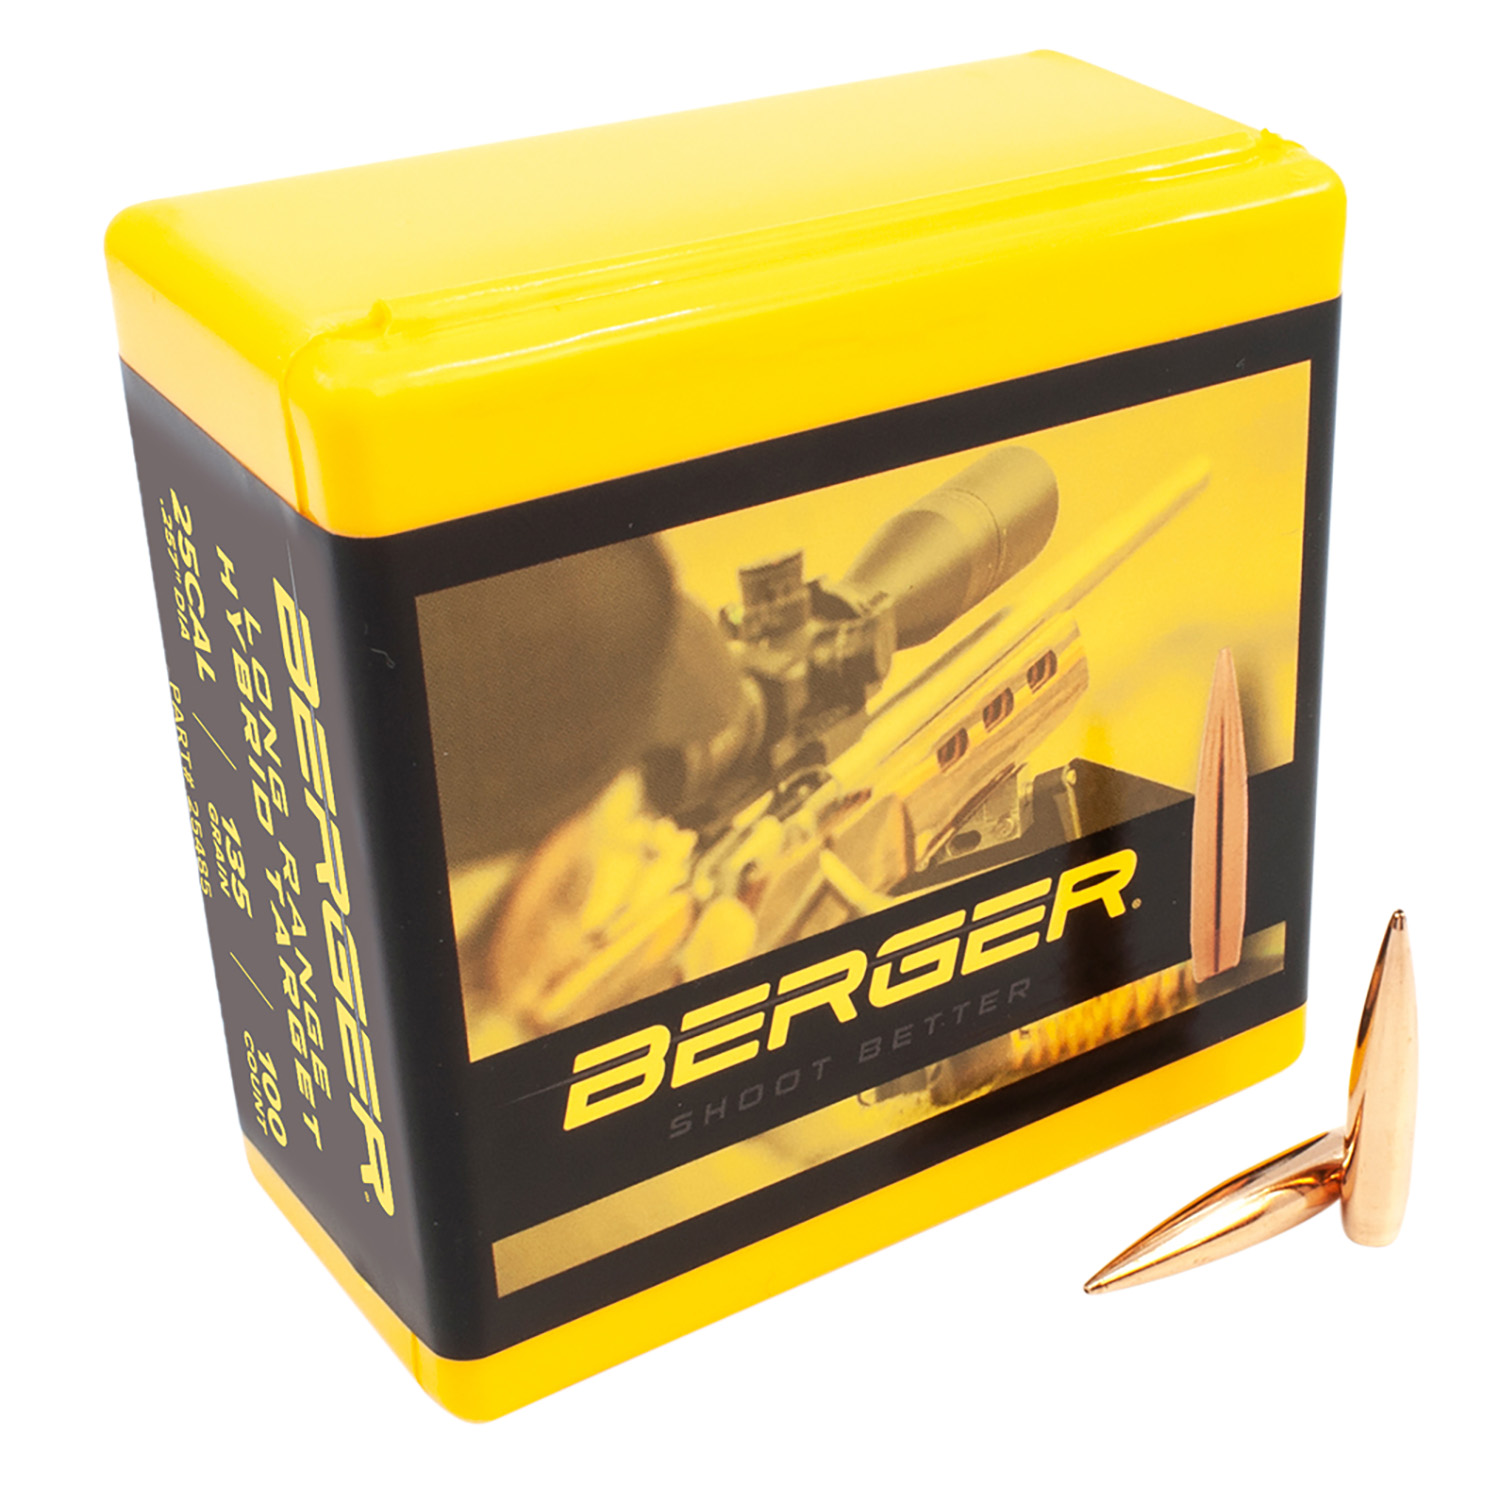 Berger Bullets 25485 Hybrid Target Long Range 25 Cal .257 135 gr Long Range Hybrid Target 100 Per Box